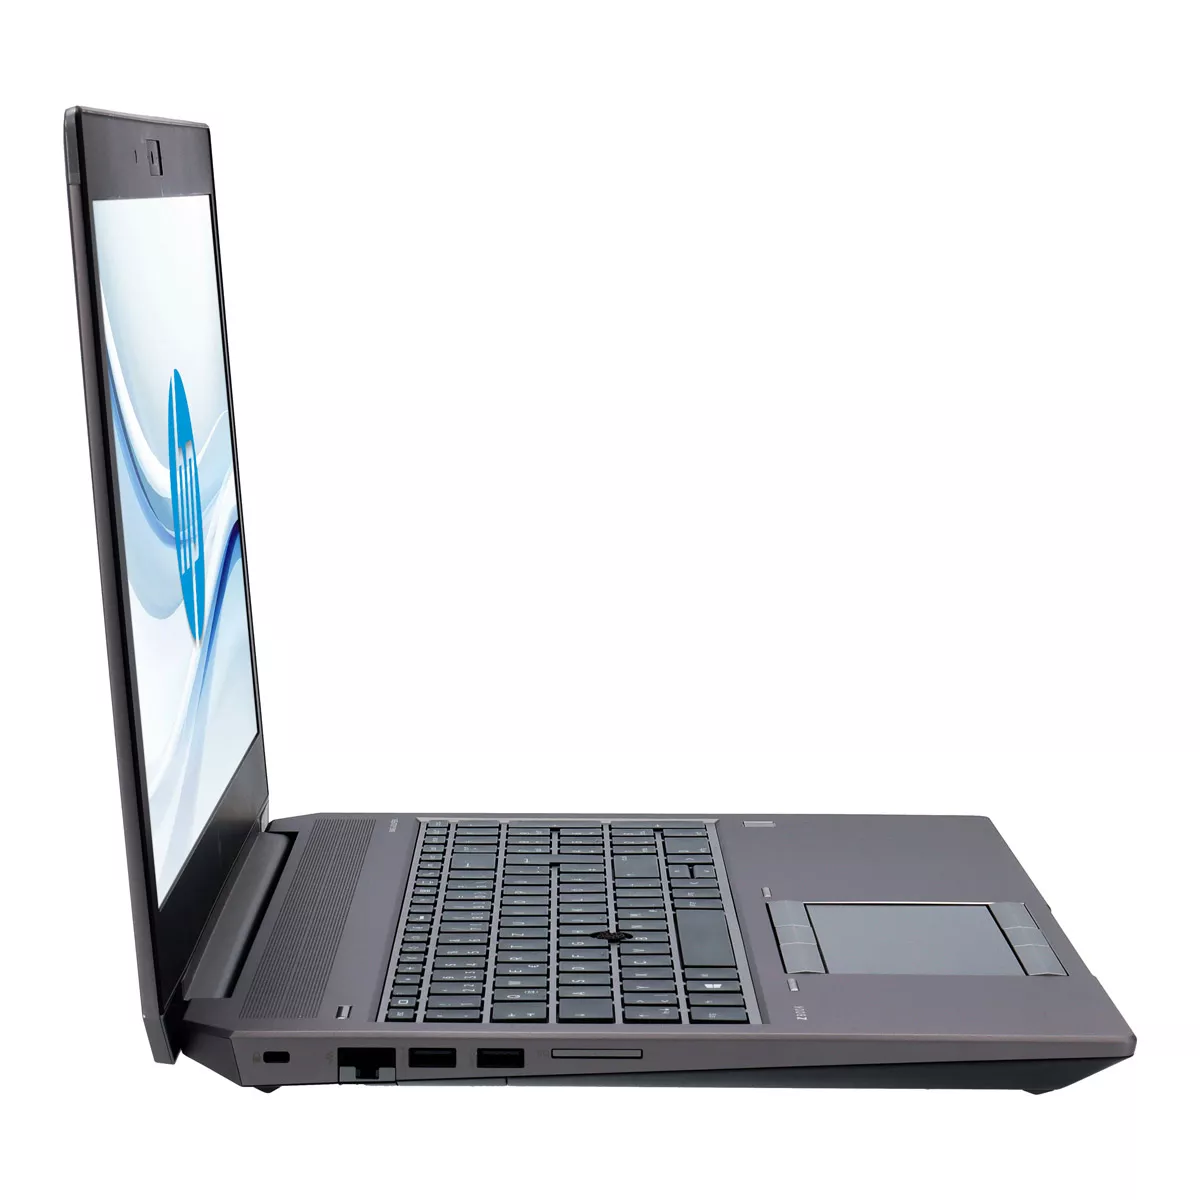 HP ZBook 15 G5 Core i7 8750H nVidia Quadro P1000M 512 GB M.2 nVME SSD Webcam A+